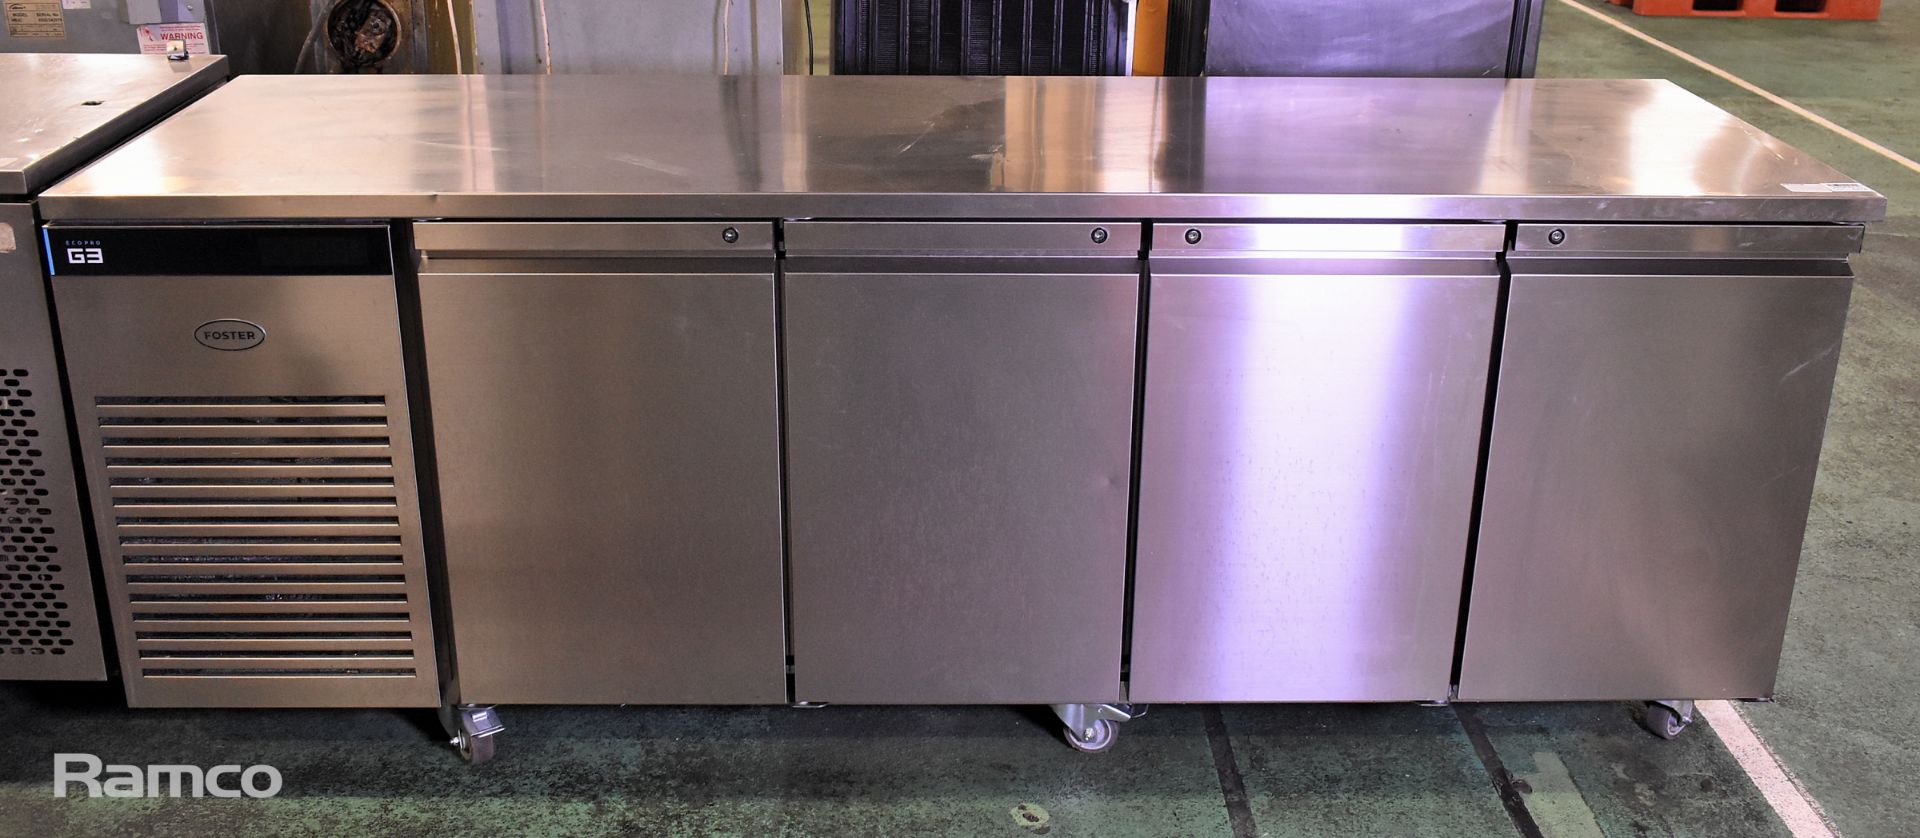 Foster Eco Pro G3 43-258 EP1/4 4 door counter fridge